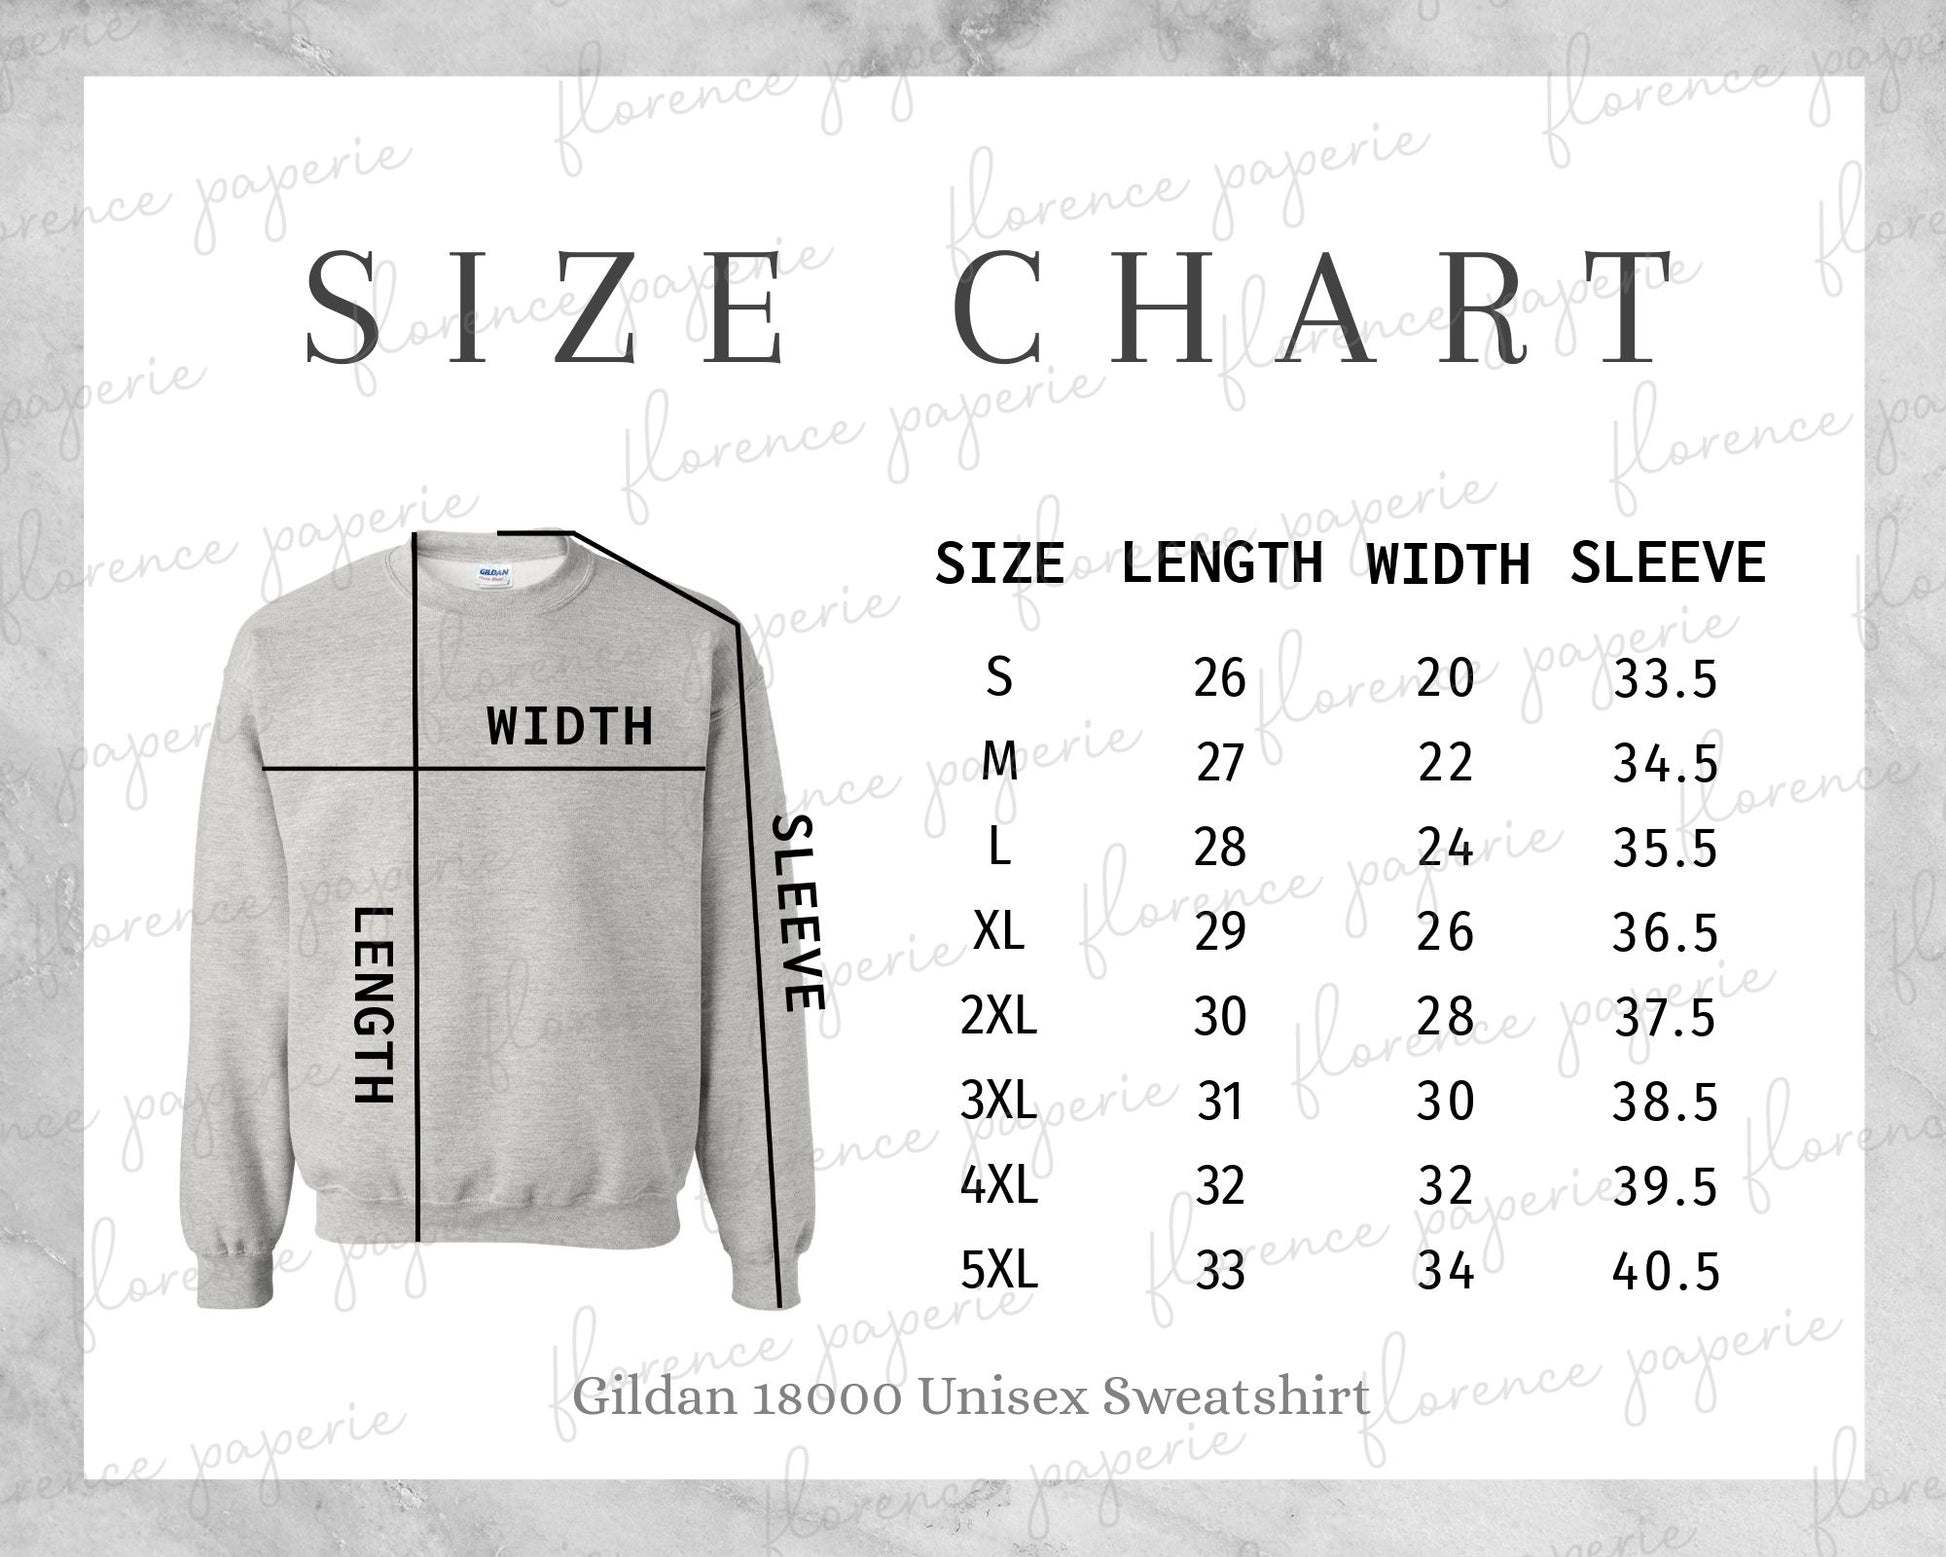 Photo of the Gildan sweatshirt size chart